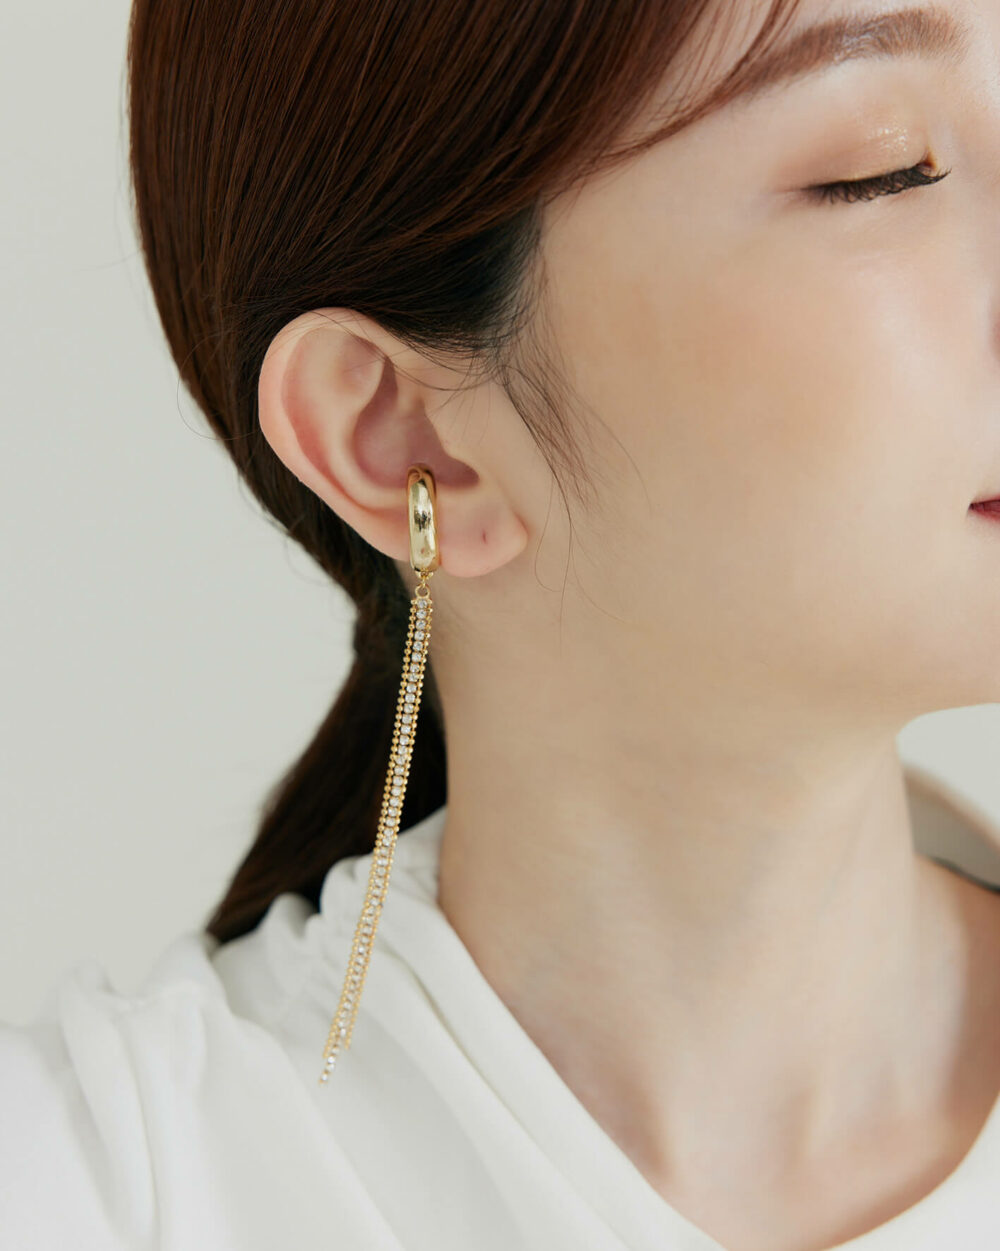 Eco安珂,韓國飾品,韓國耳環,韓國耳骨夾,韓國耳扣,耳夾式耳環,耳骨夾,耳扣,耳骨耳環,耳窩耳環,無耳洞耳環,垂墜耳骨夾